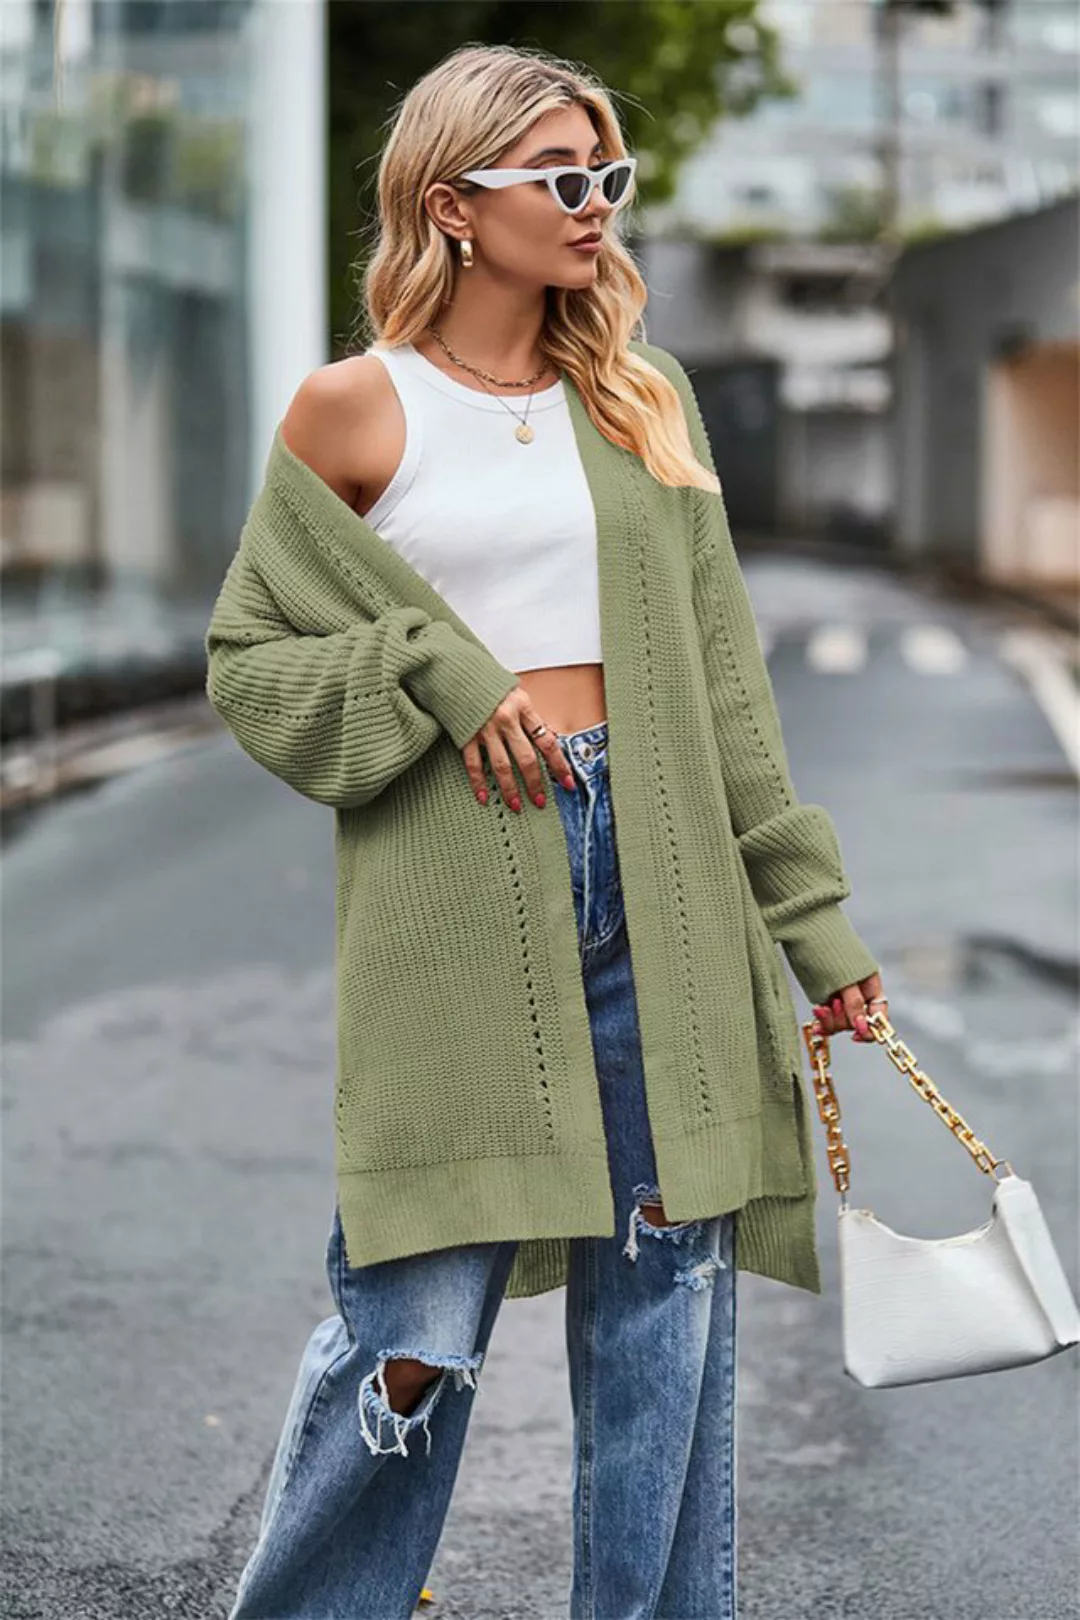 RUZU UG Strickpullover Pullover damen sale pullover damen winter pullover W günstig online kaufen